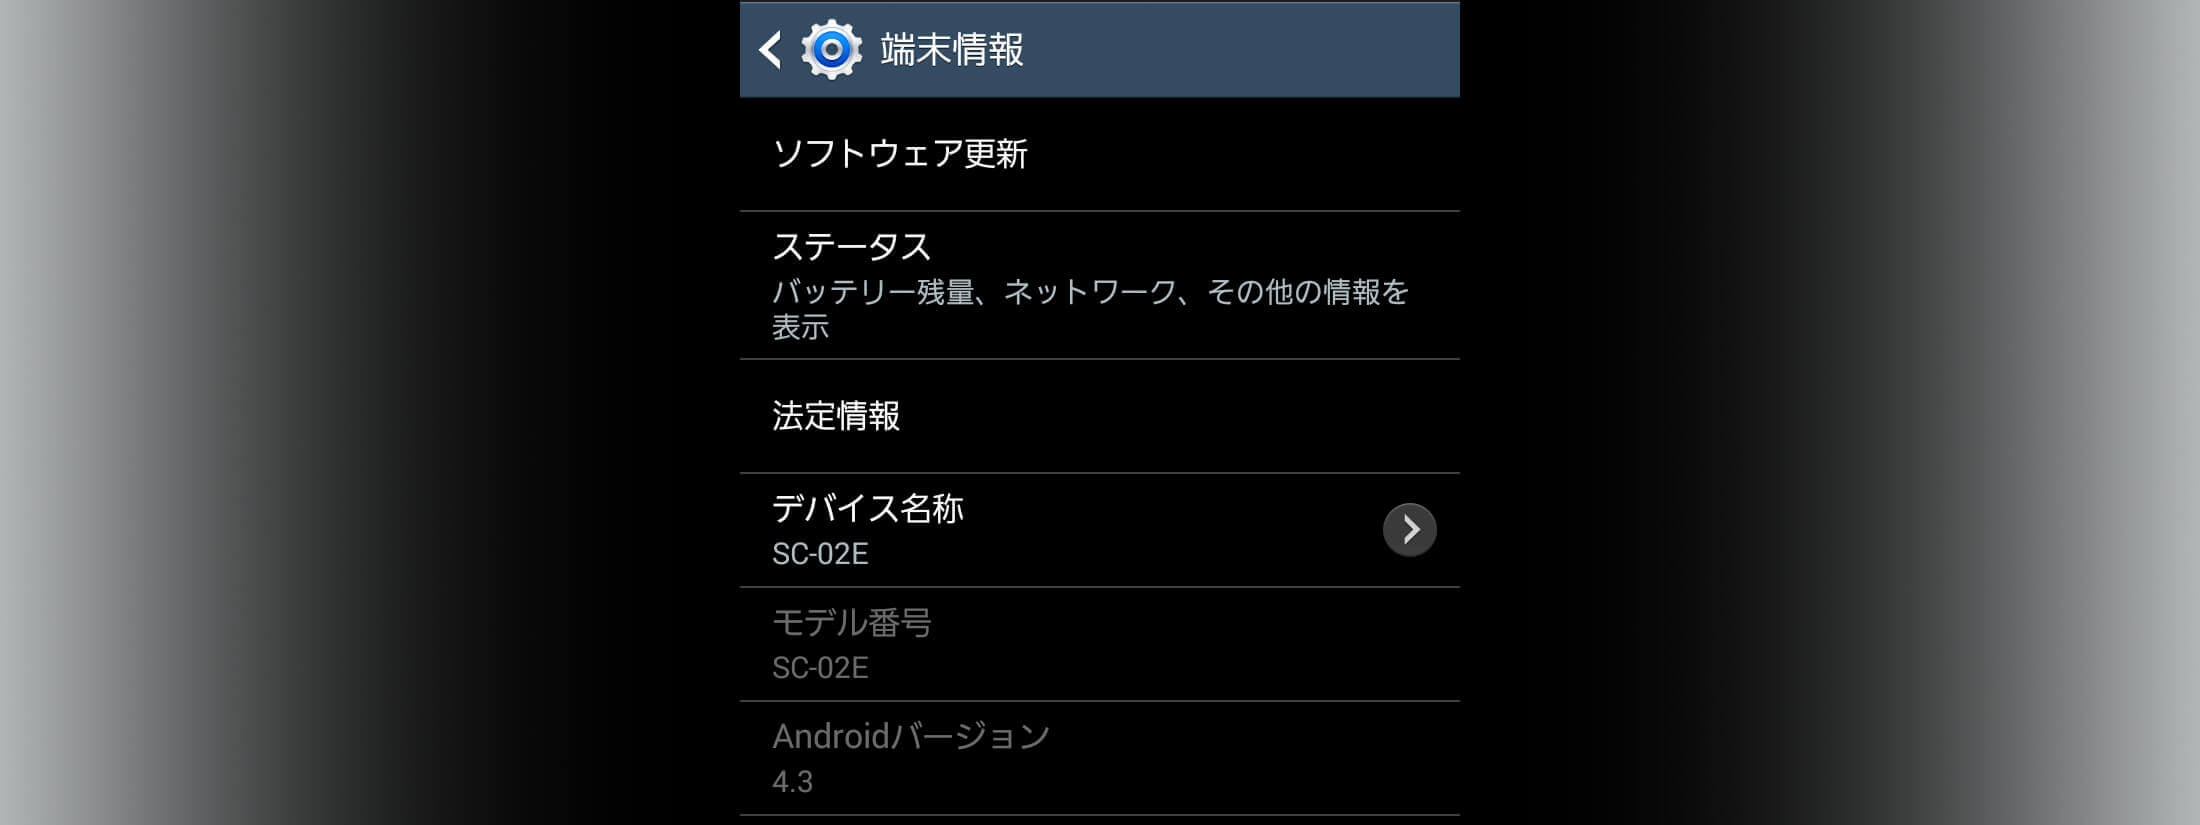 Android OS 4.2以上で開発者オプションを表示するキャッチコピー画像